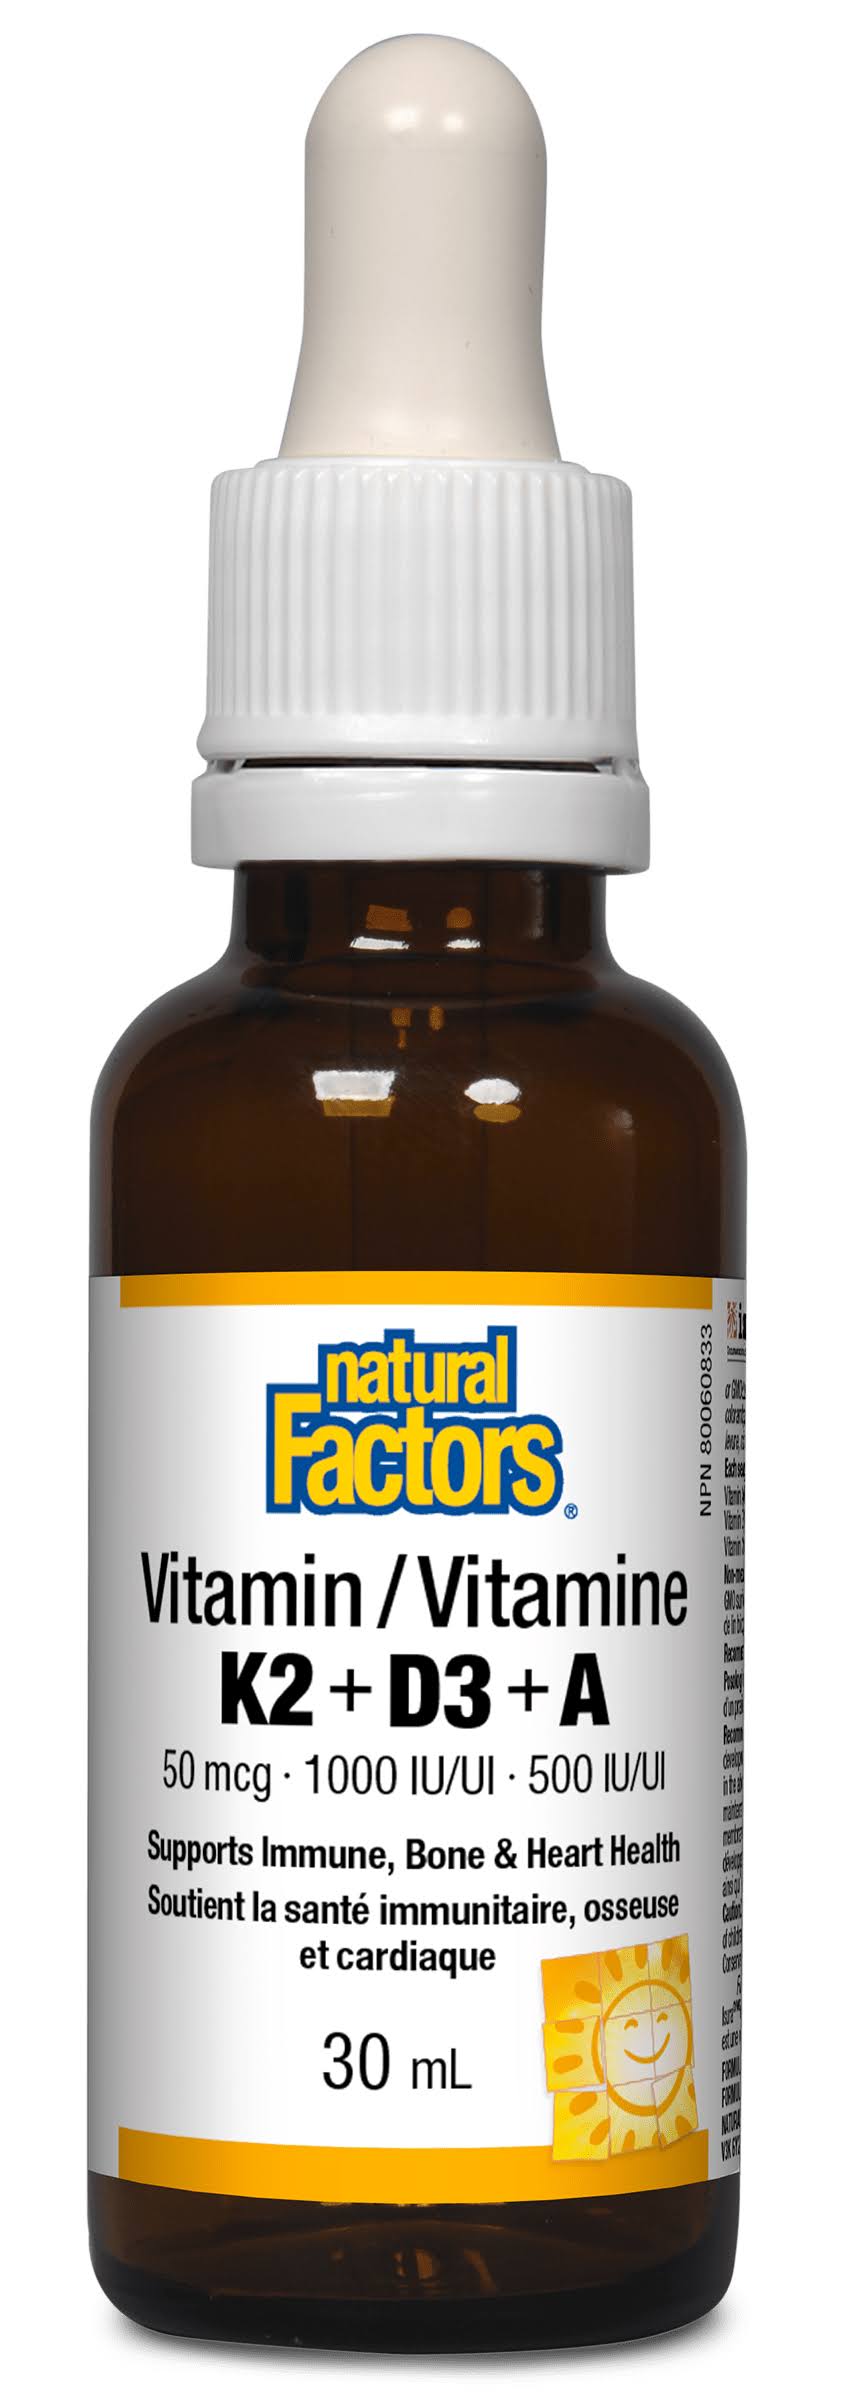 Natural Factors Vitamin K2+D3+A 30mL